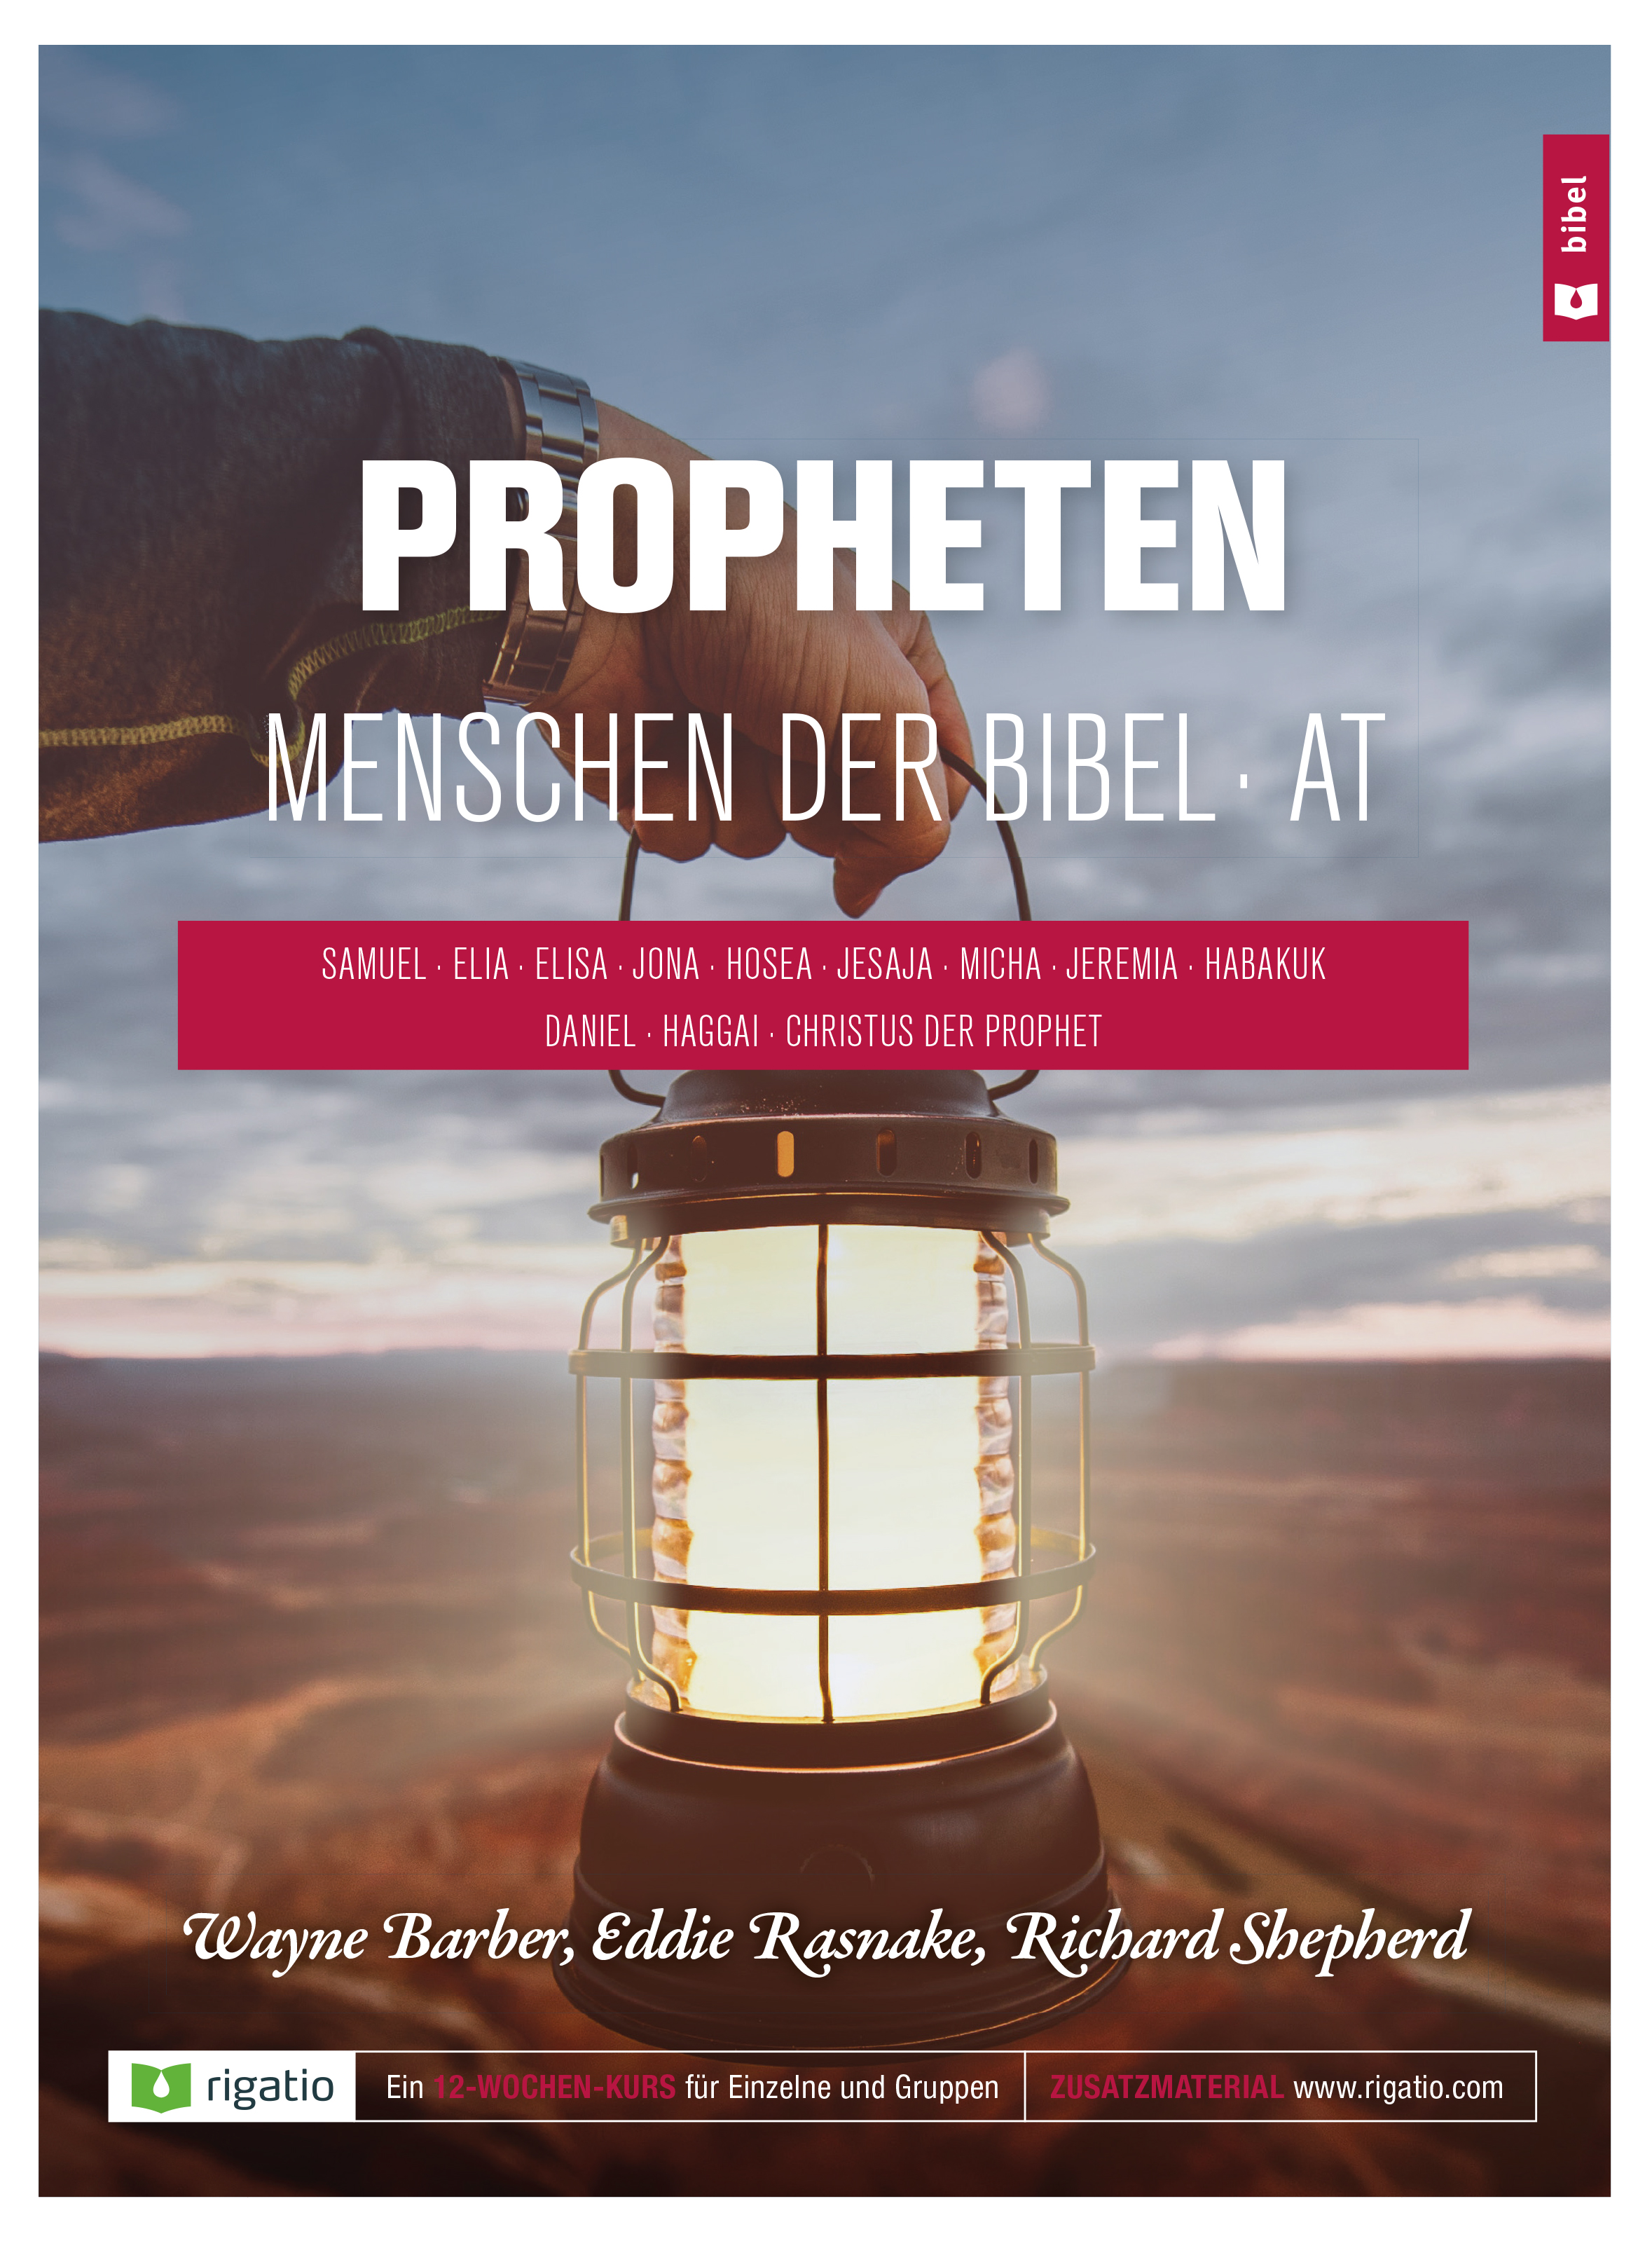 Propheten - Menschen der Bibel AT